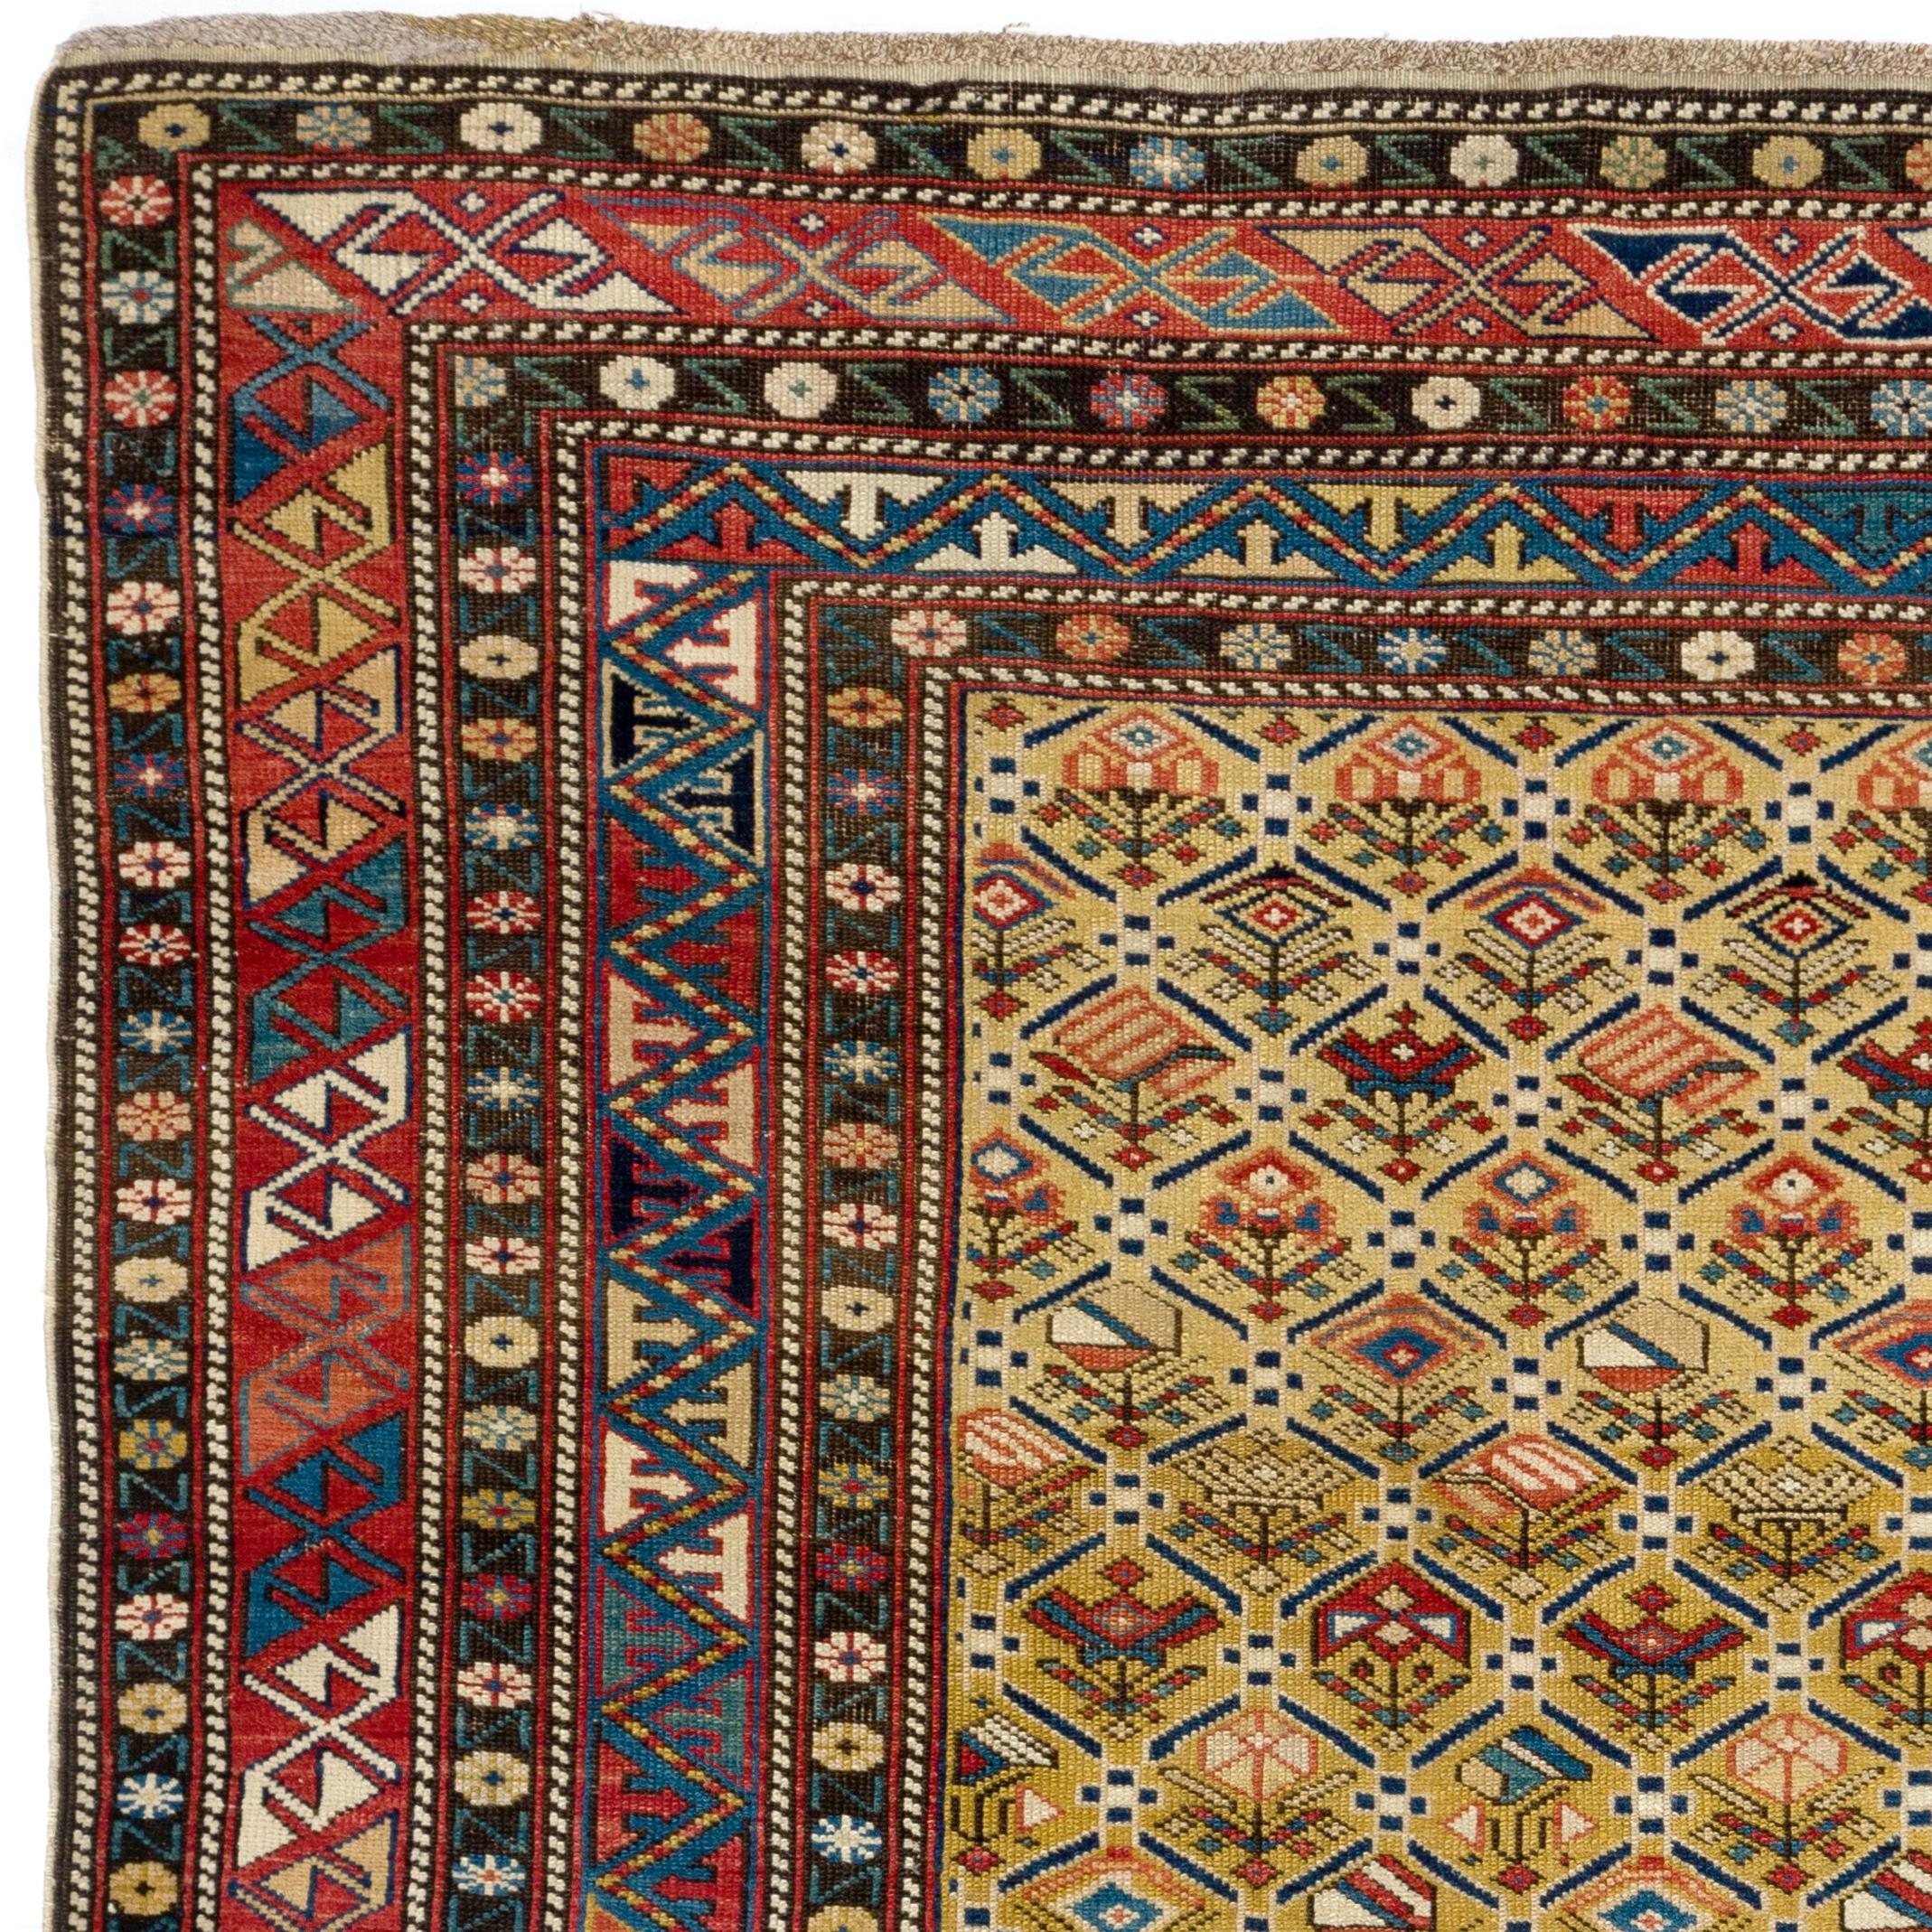 Feiner antiker kaukasischer Schirwan-Teppich, alle natürlichen Farbstoffe.
Ausgezeichneter Originalzustand. Robust und so sauber wie ein nagelneuer Teppich (professionell tiefgewaschen). 
Größe: 4 x 5,5 ft.